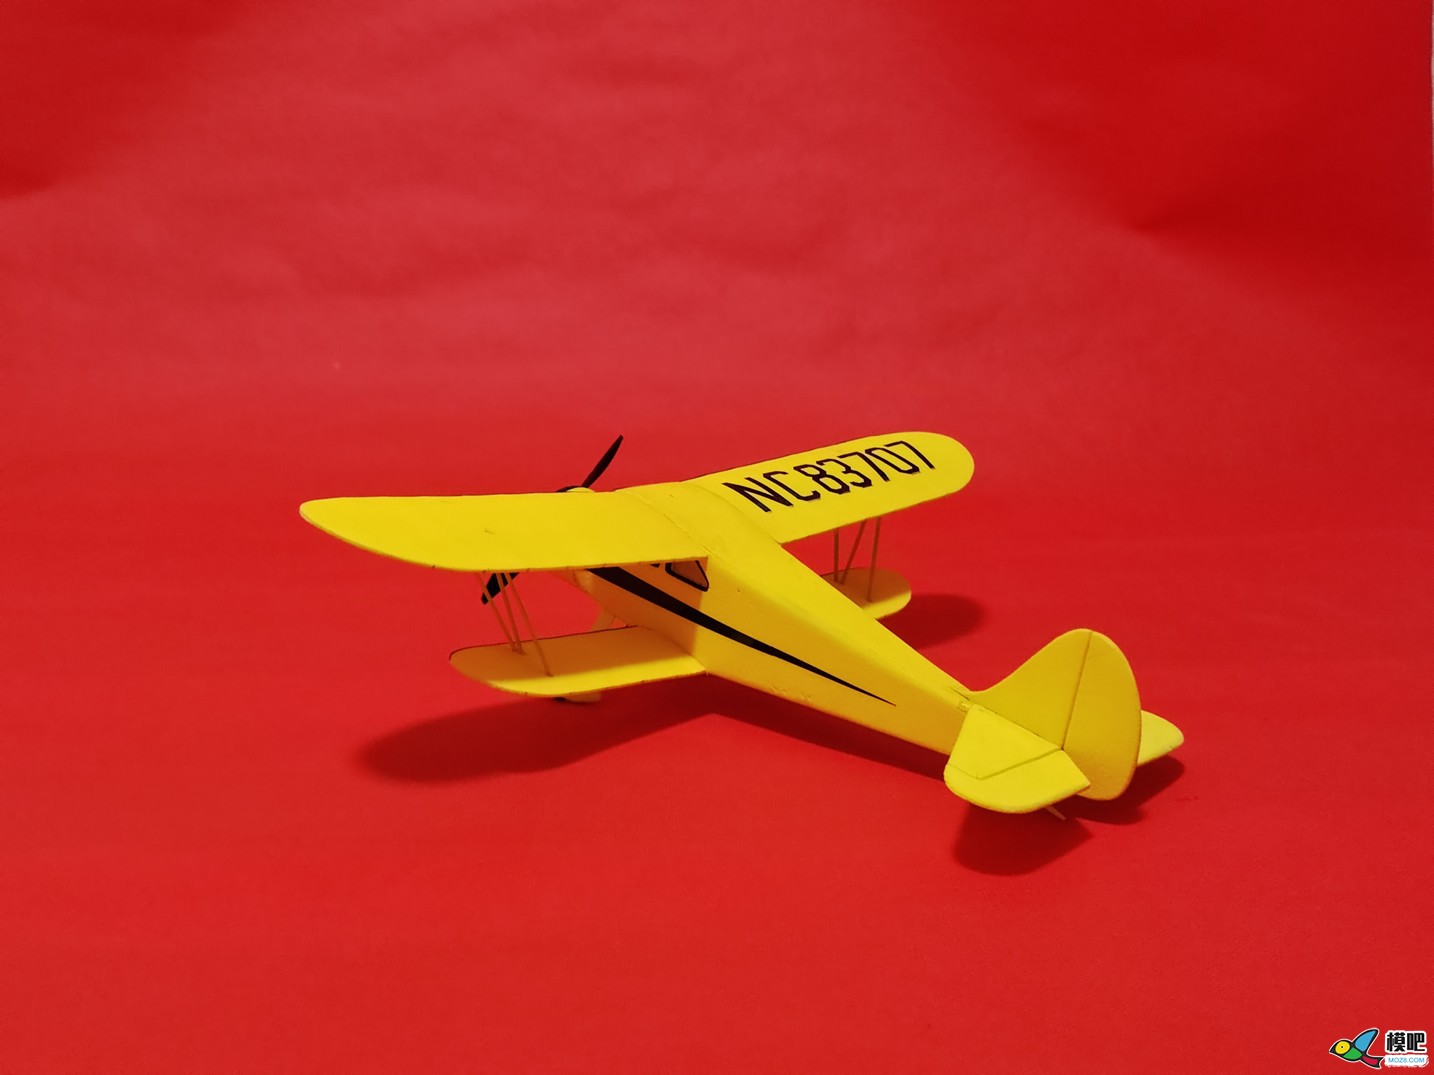 【爱因制造】自制WACO-SRE双翼机 电池,接收机,起飞重量,电池设备,双翼机 作者:xbnlkdbxl 8011 